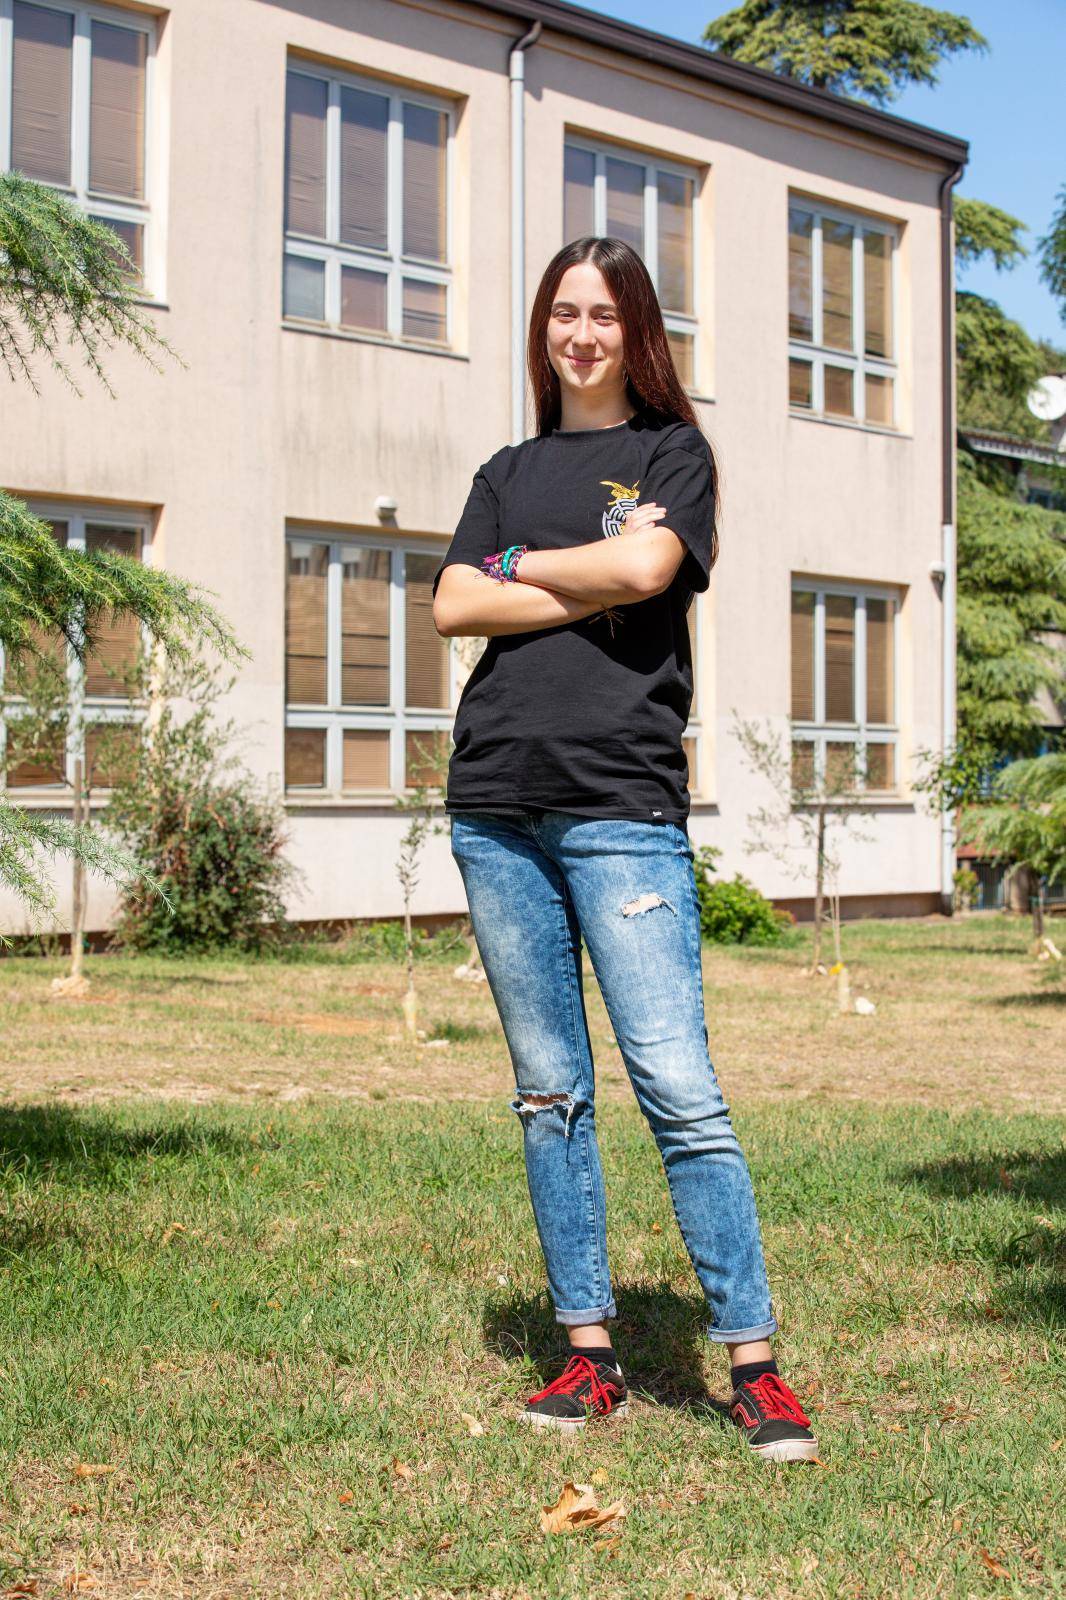 Maturantica iz Pule: Želim kraj srednje dočekati  u  razredu. Dosta mi je 'novog normalnog'